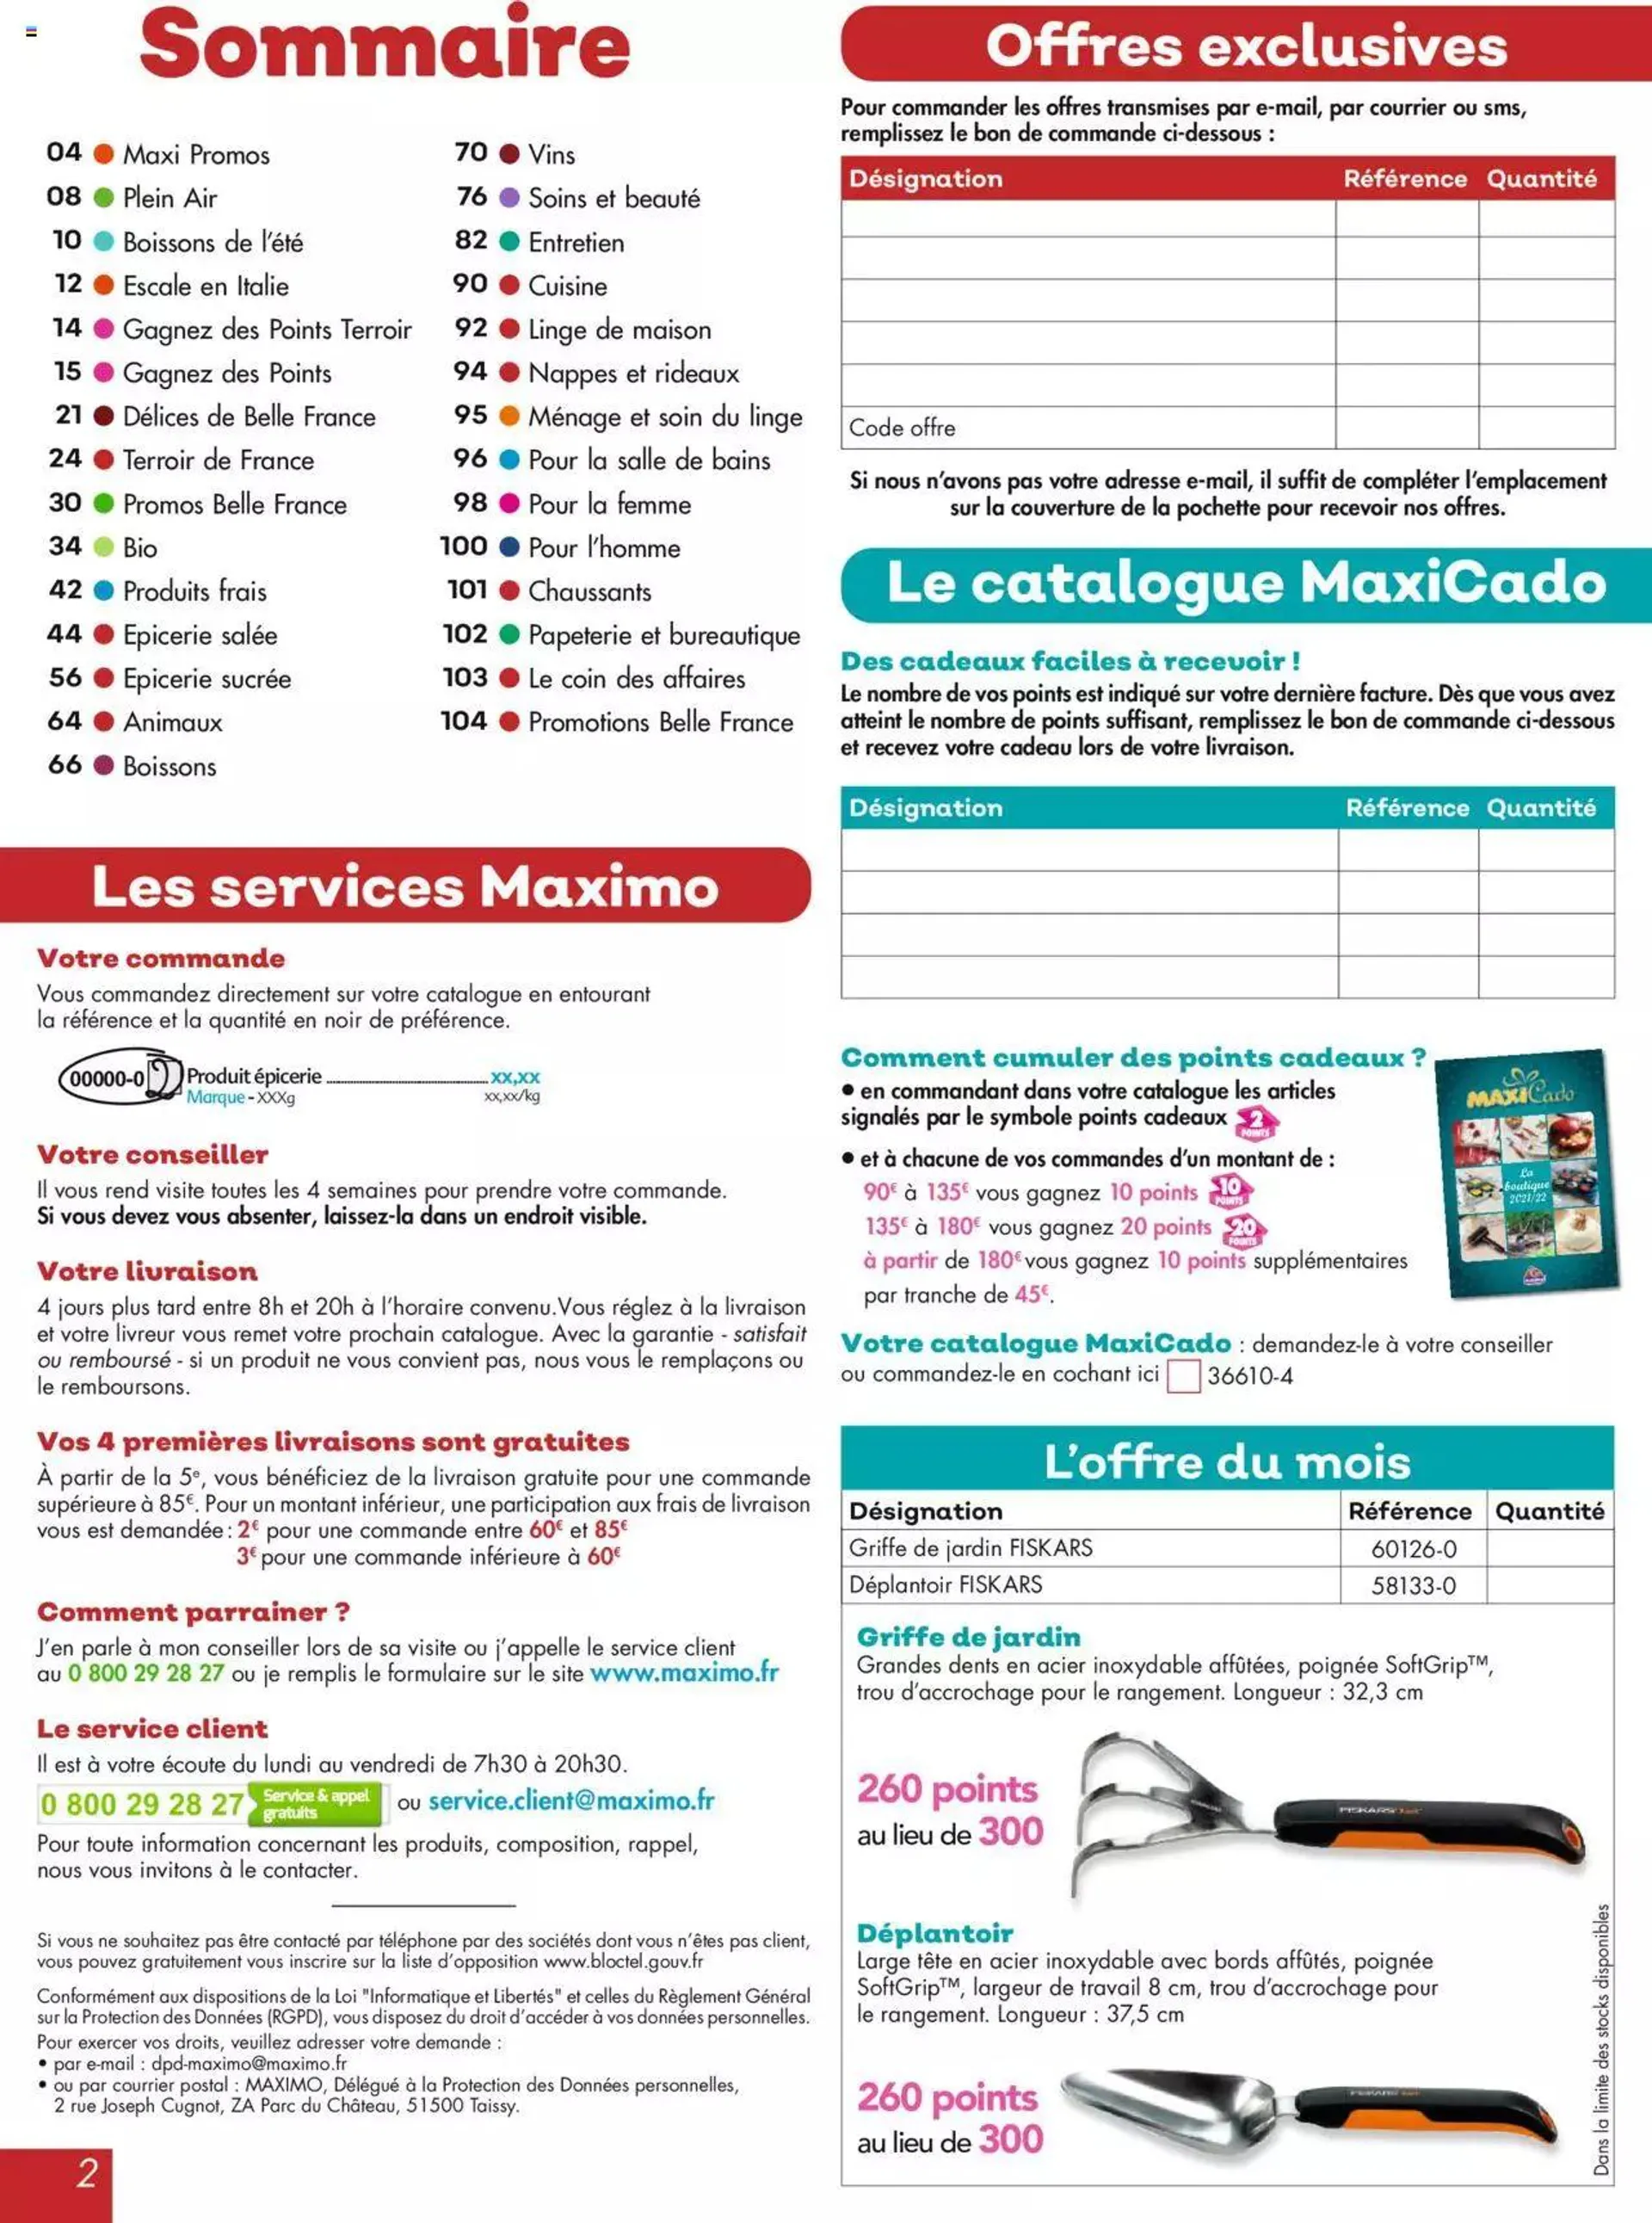 Maximo catalogue - 1